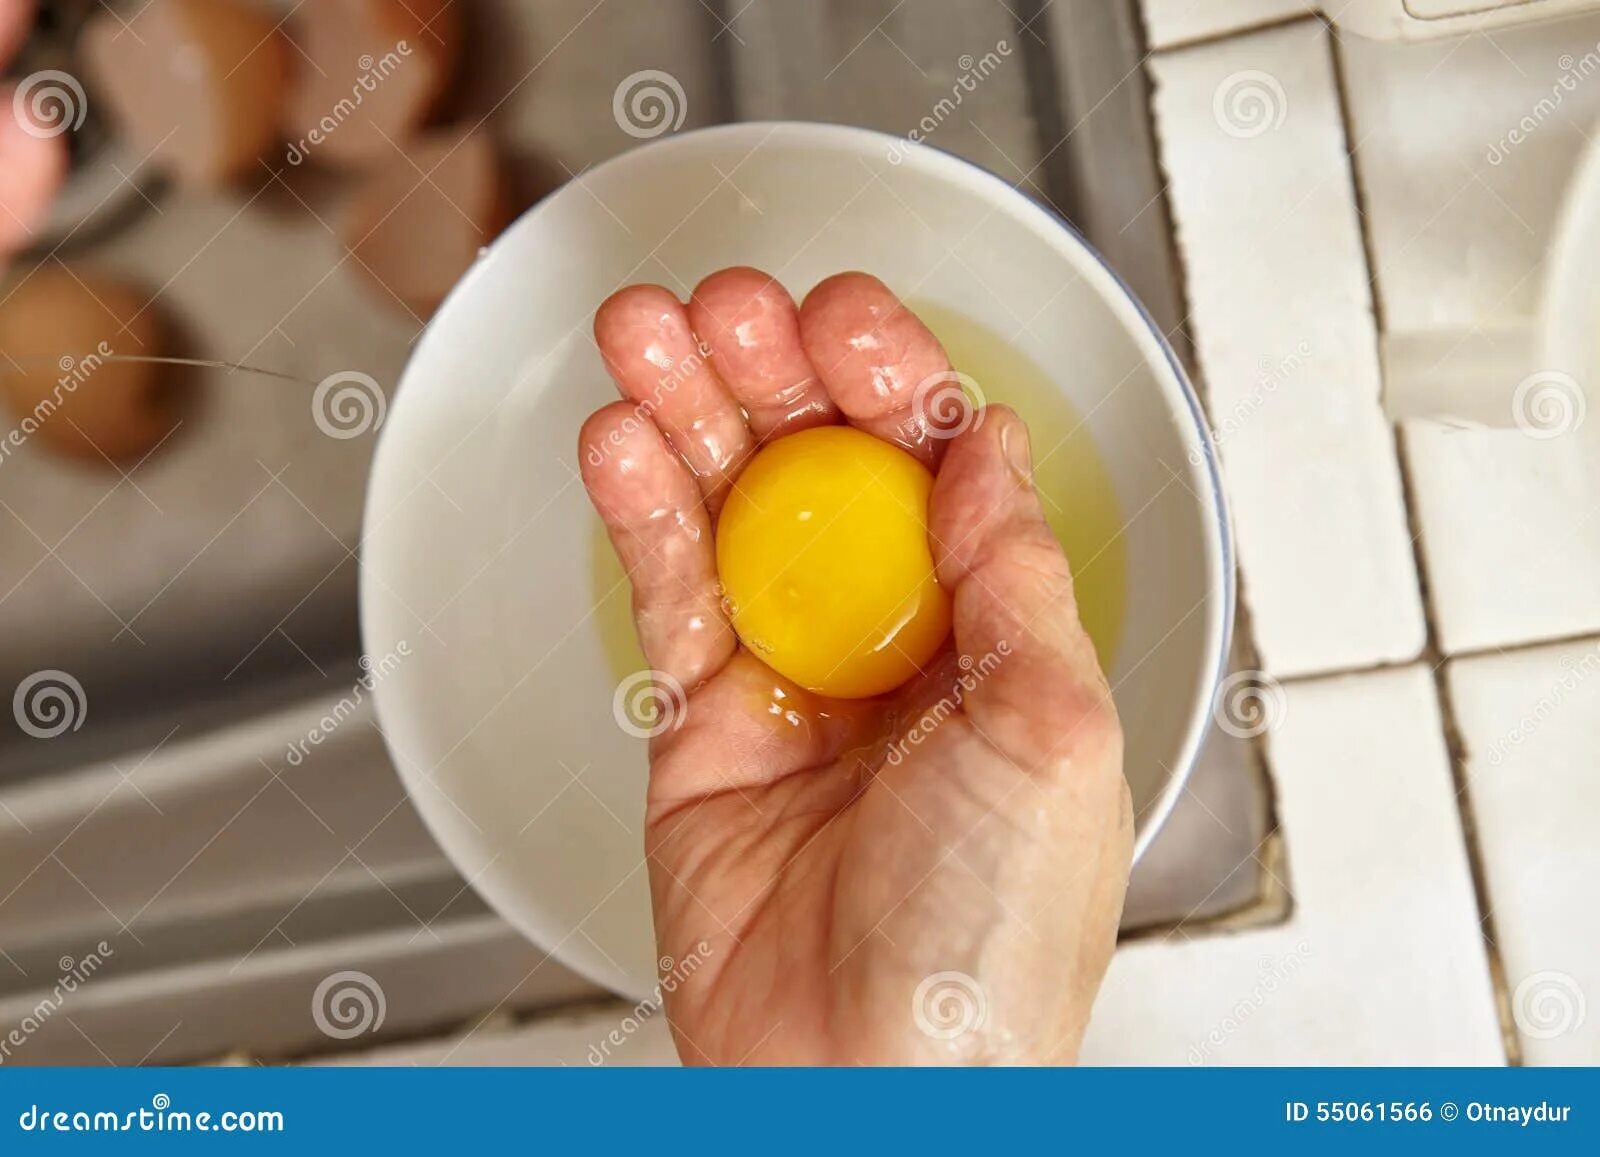 Сырое яйцо. Яйцо в руке. Яичный желток. Разбитое яйцо. К чему снятся сырые яйца разбивать